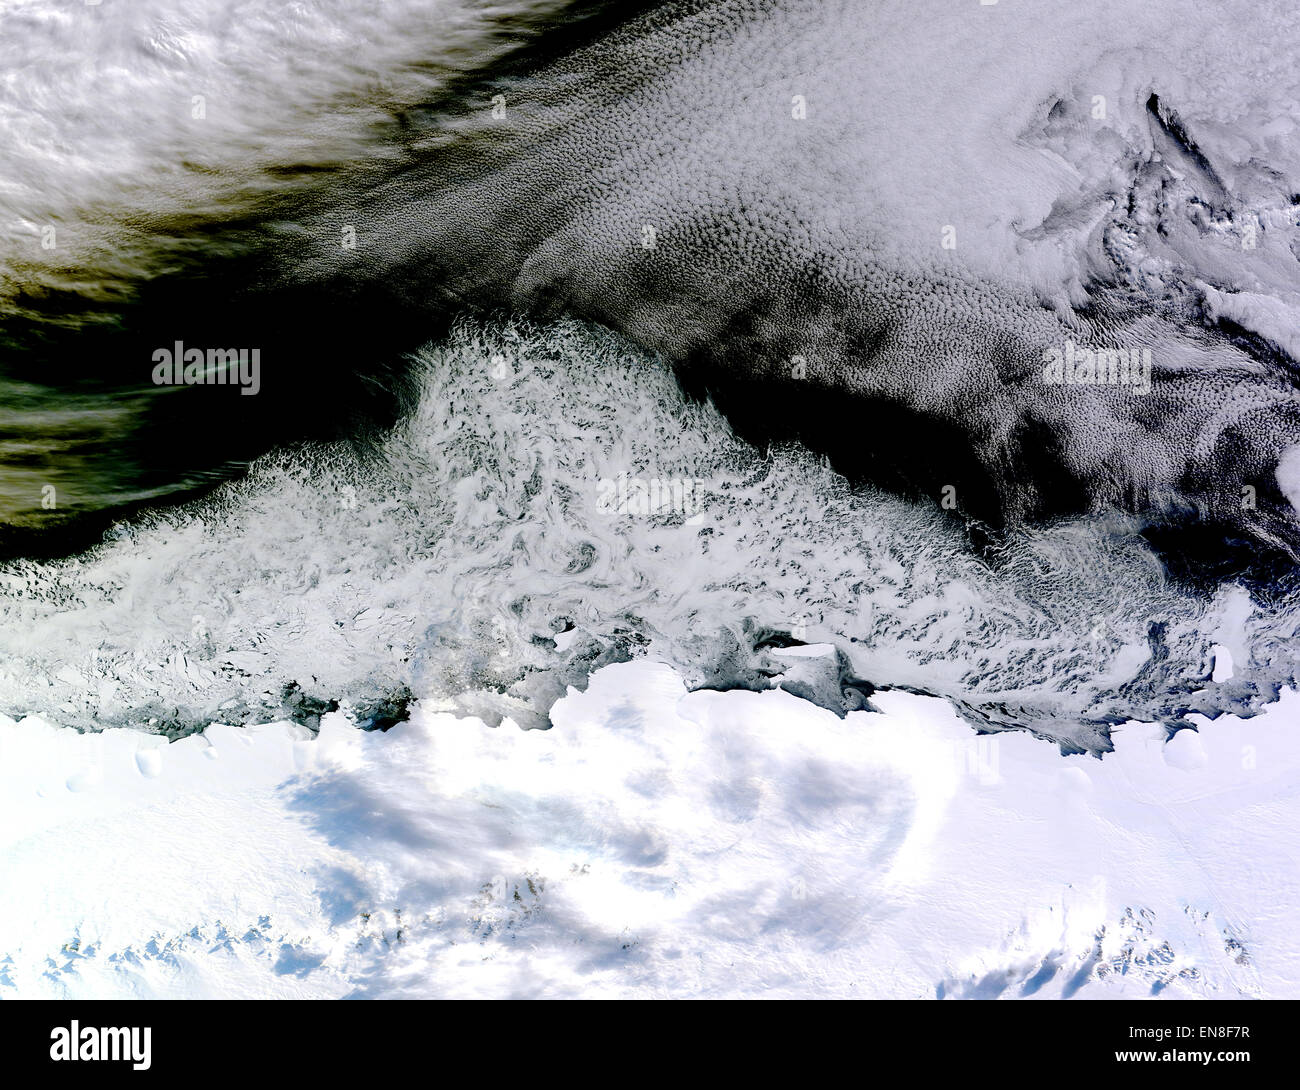 Am 5. April 2015 erwarb die Moderate Resolution Imaging Spektroradiometer (MODIS) auf NASA Satelliten Terra dieser natürlichen Farbbild des Meereises vor der Küste von Ost-Antarktis Prinzessin Astrid Küste.  Weiße Bereiche in der Nähe des Kontinents sind Meereis, während weiße Bereiche in der nordöstlichen Ecke des Bildes Wolken sind. Eine Möglichkeit, besser Eis aus den Wolken zu unterscheiden ist mit Falschfarben-Bilder. Die Falschfarben-Ansicht der Szene hier Eis ist blau und die Wolken sind weiß.  Das Bild war erworben, nachdem antarktische Meereis seine jährliche minimalen Umfang (erreichte am 20. Februar 2015) vergangen waren, und hatte wieder Stockfoto